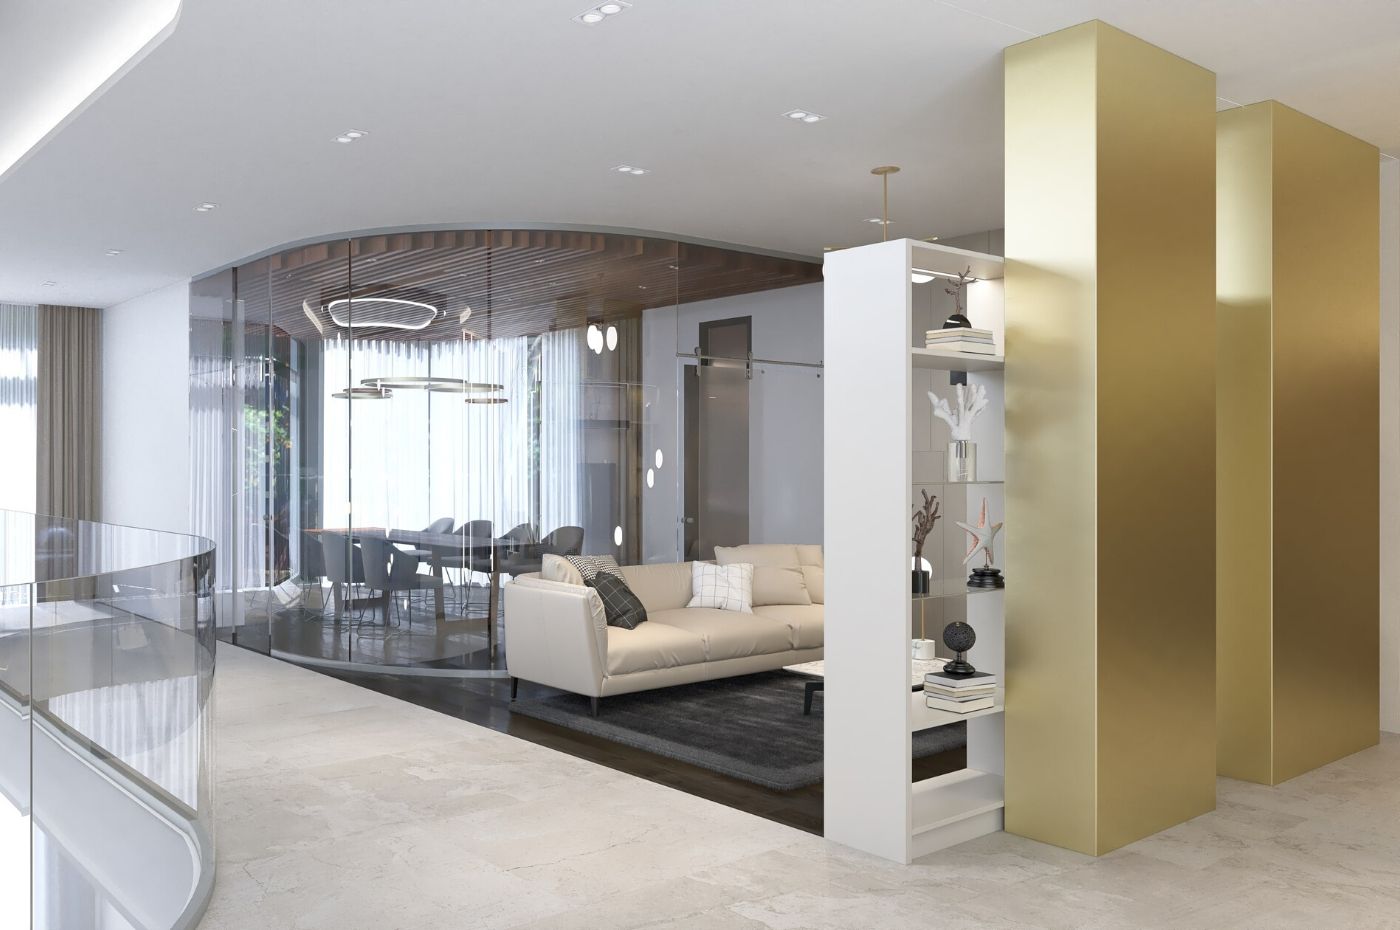 4 mẫu nội thất gỗ phòng khách cao cấp đẹp nhất 2020